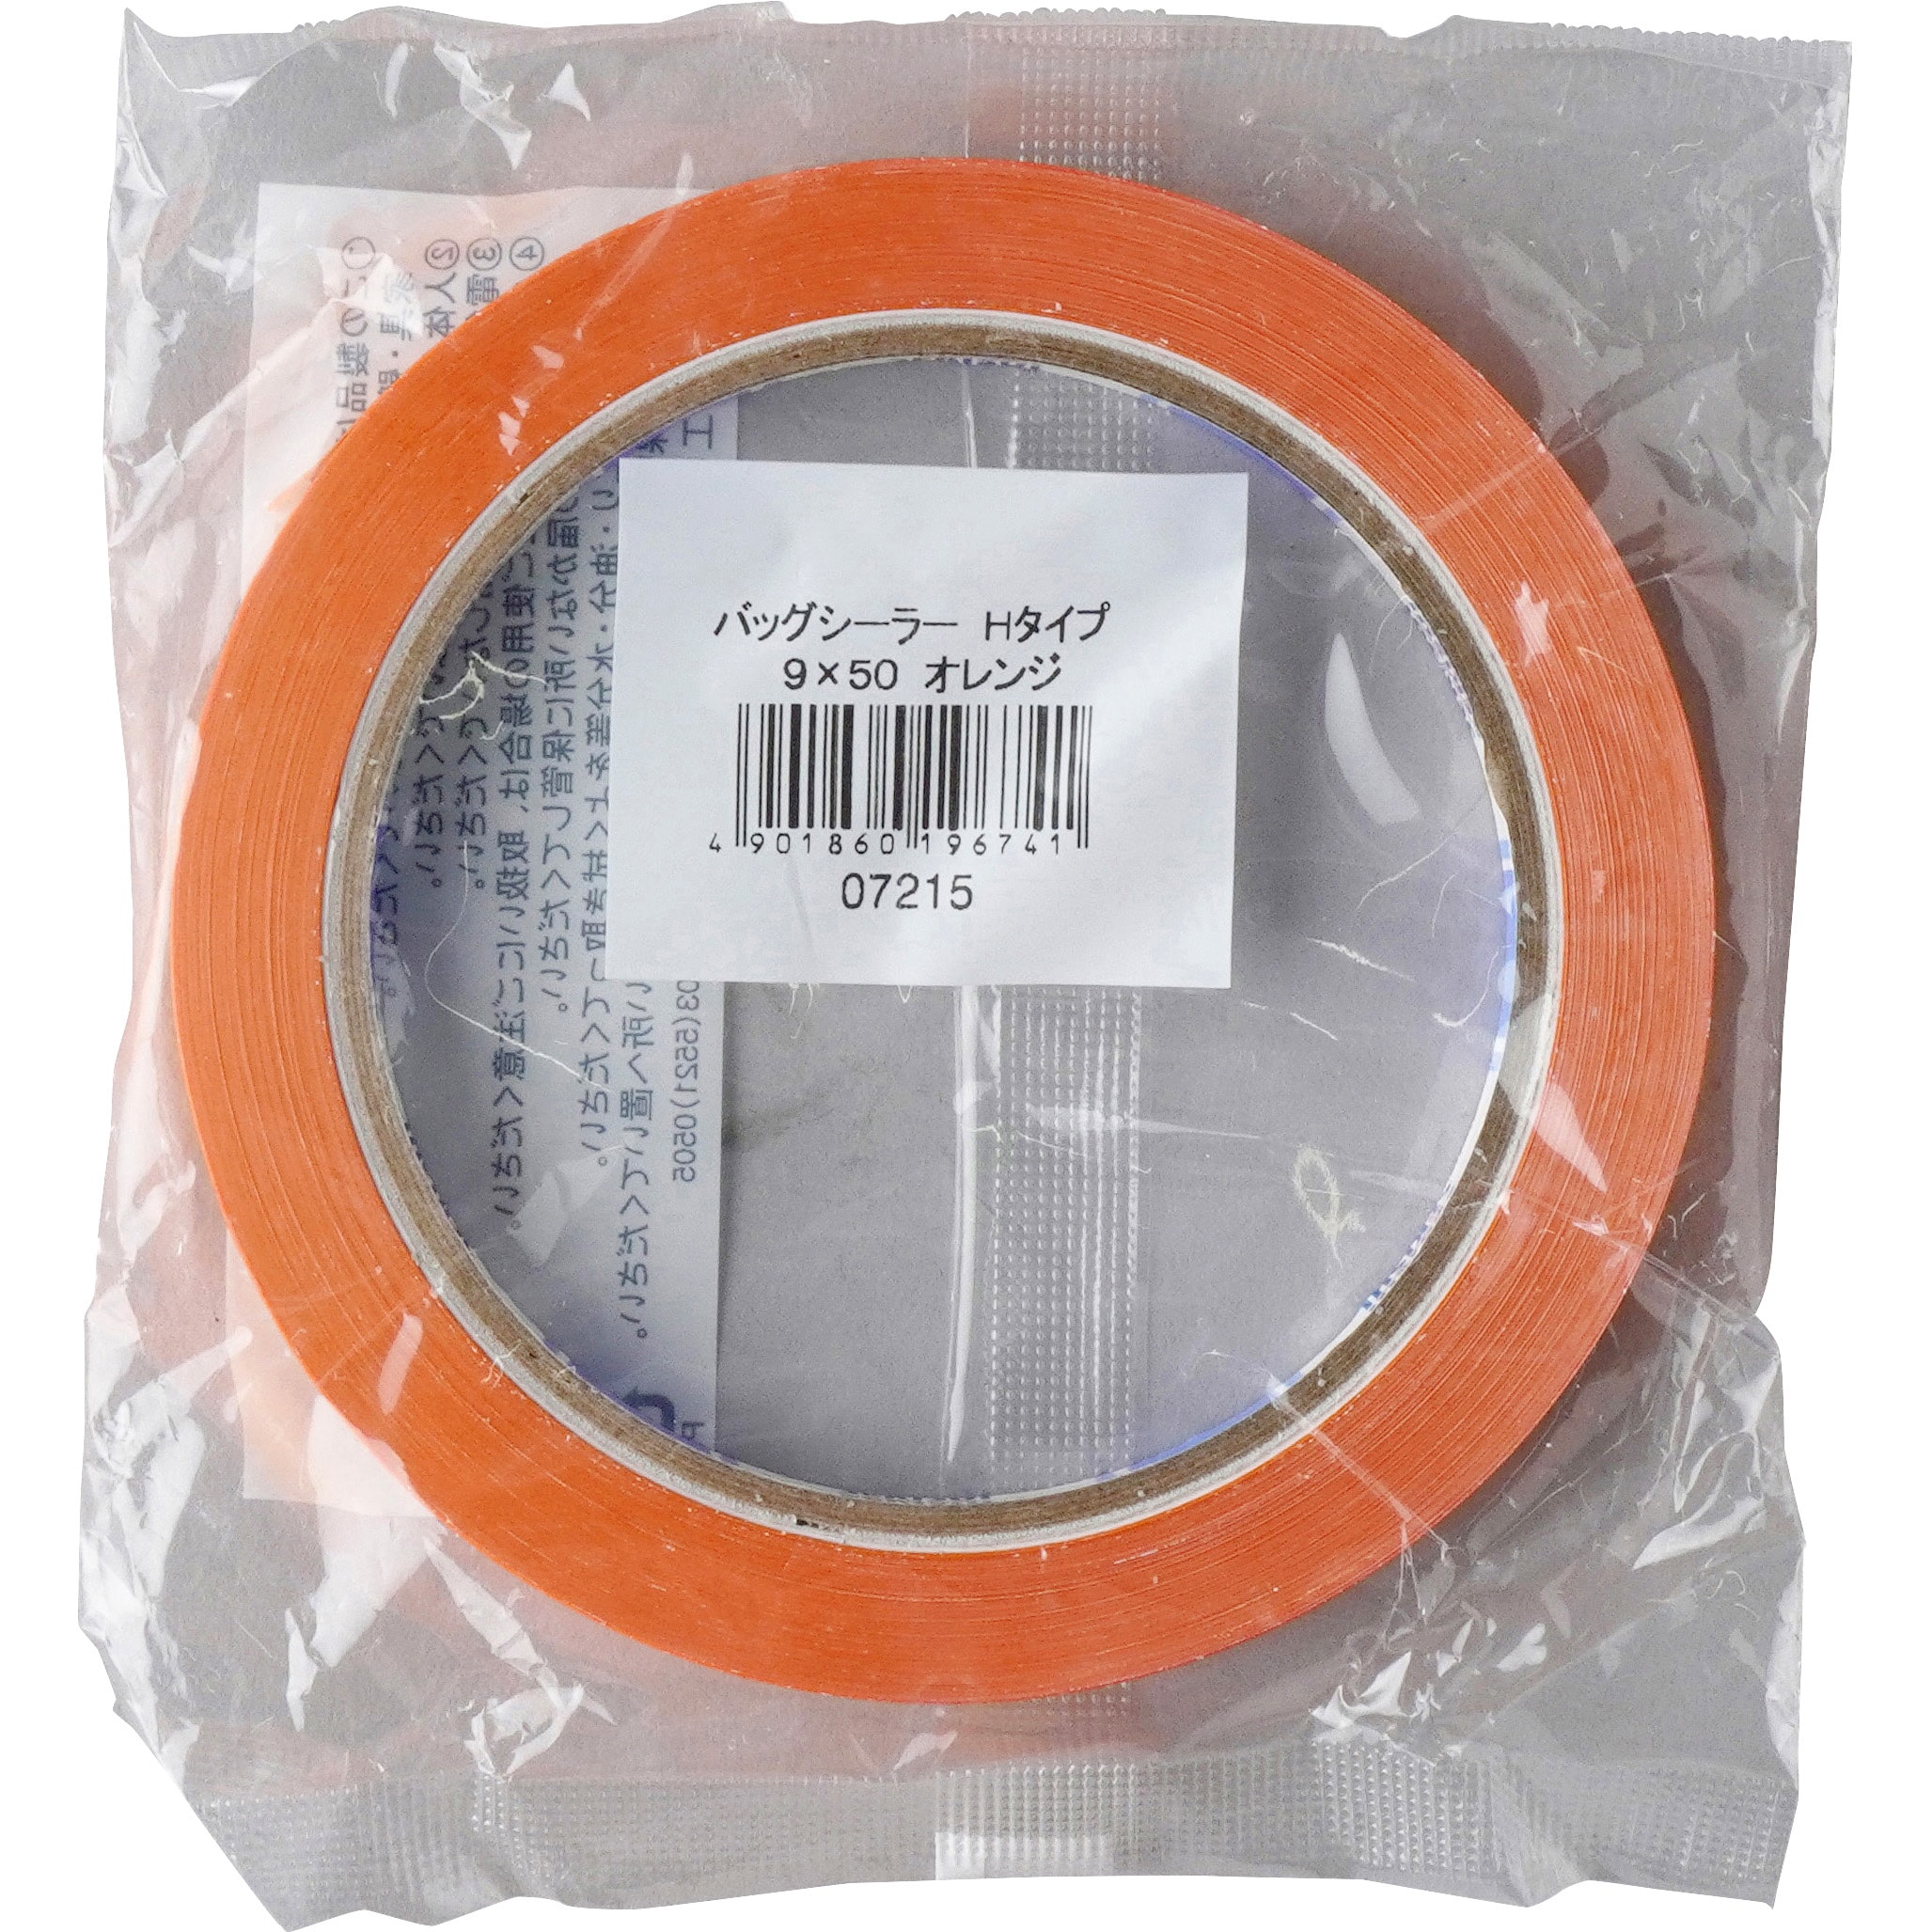 ケース販売積水化学工業 バッグシーラーテープ Hタイプ 9×50 やさい緑 002000021 1ケース(200巻入) - 3